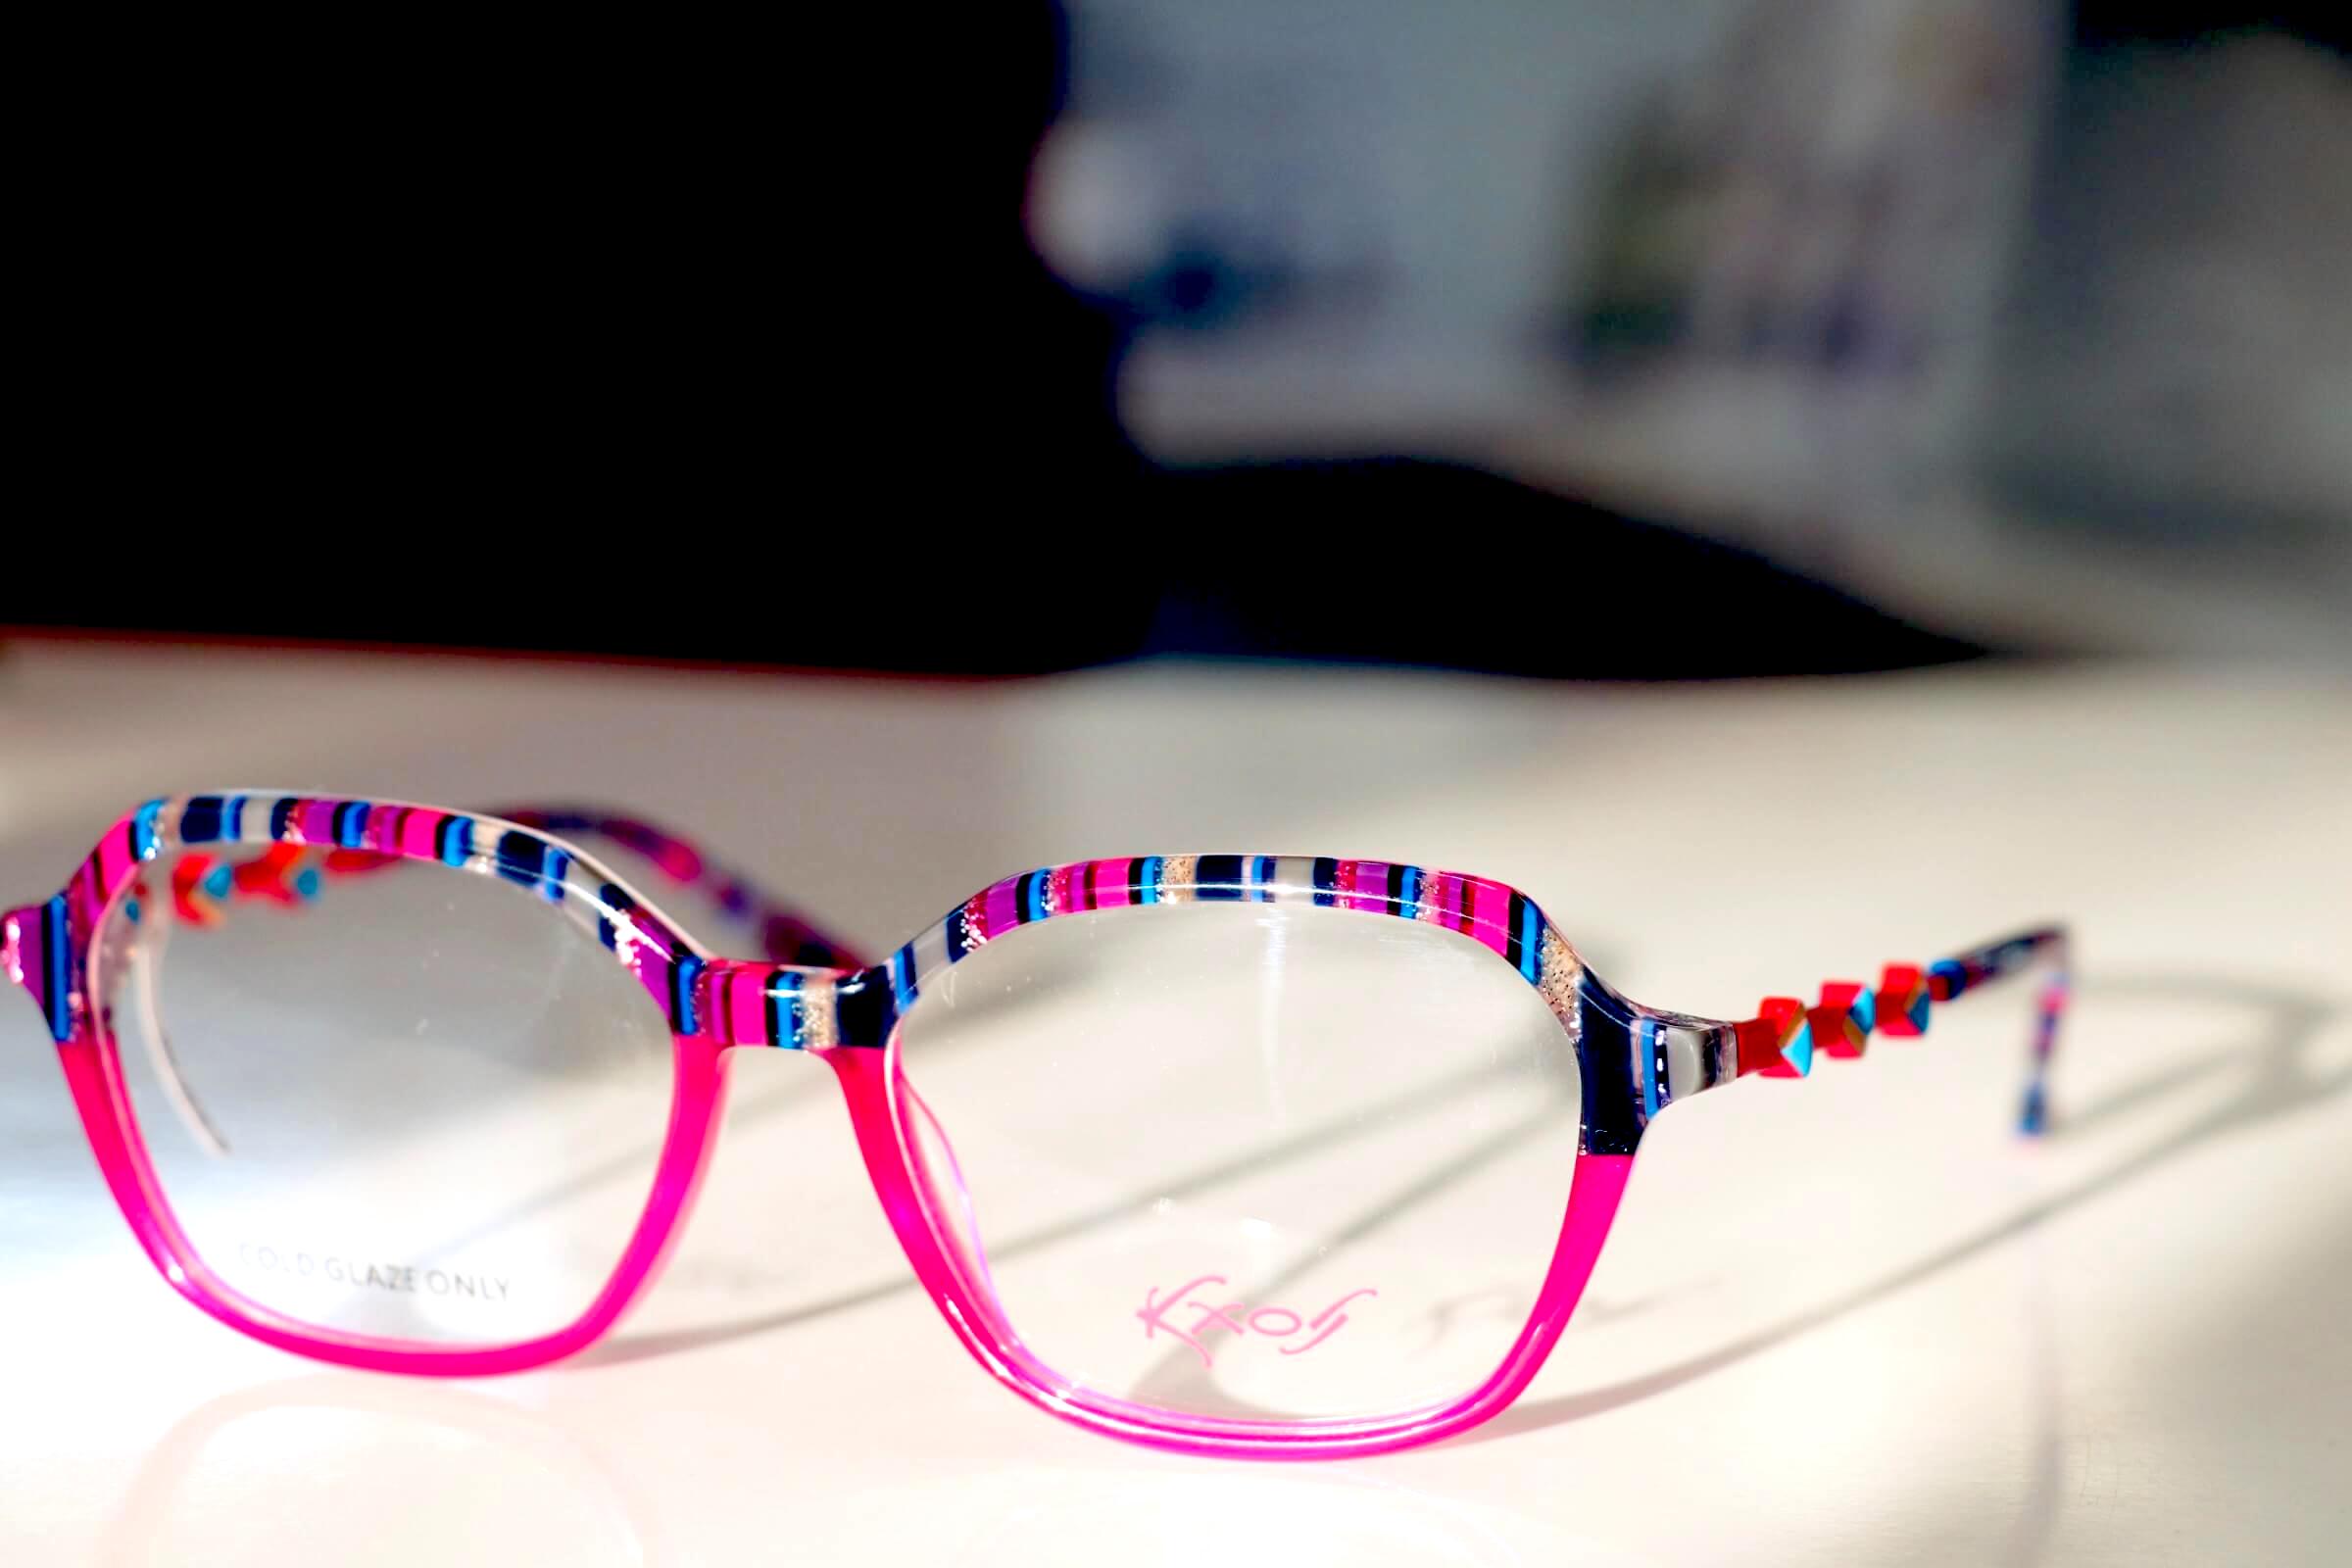 Pinkfarbene Brille mit Streifenmuster oberhalb der Brillengläser aus der Kaos-Kollektion von Area98